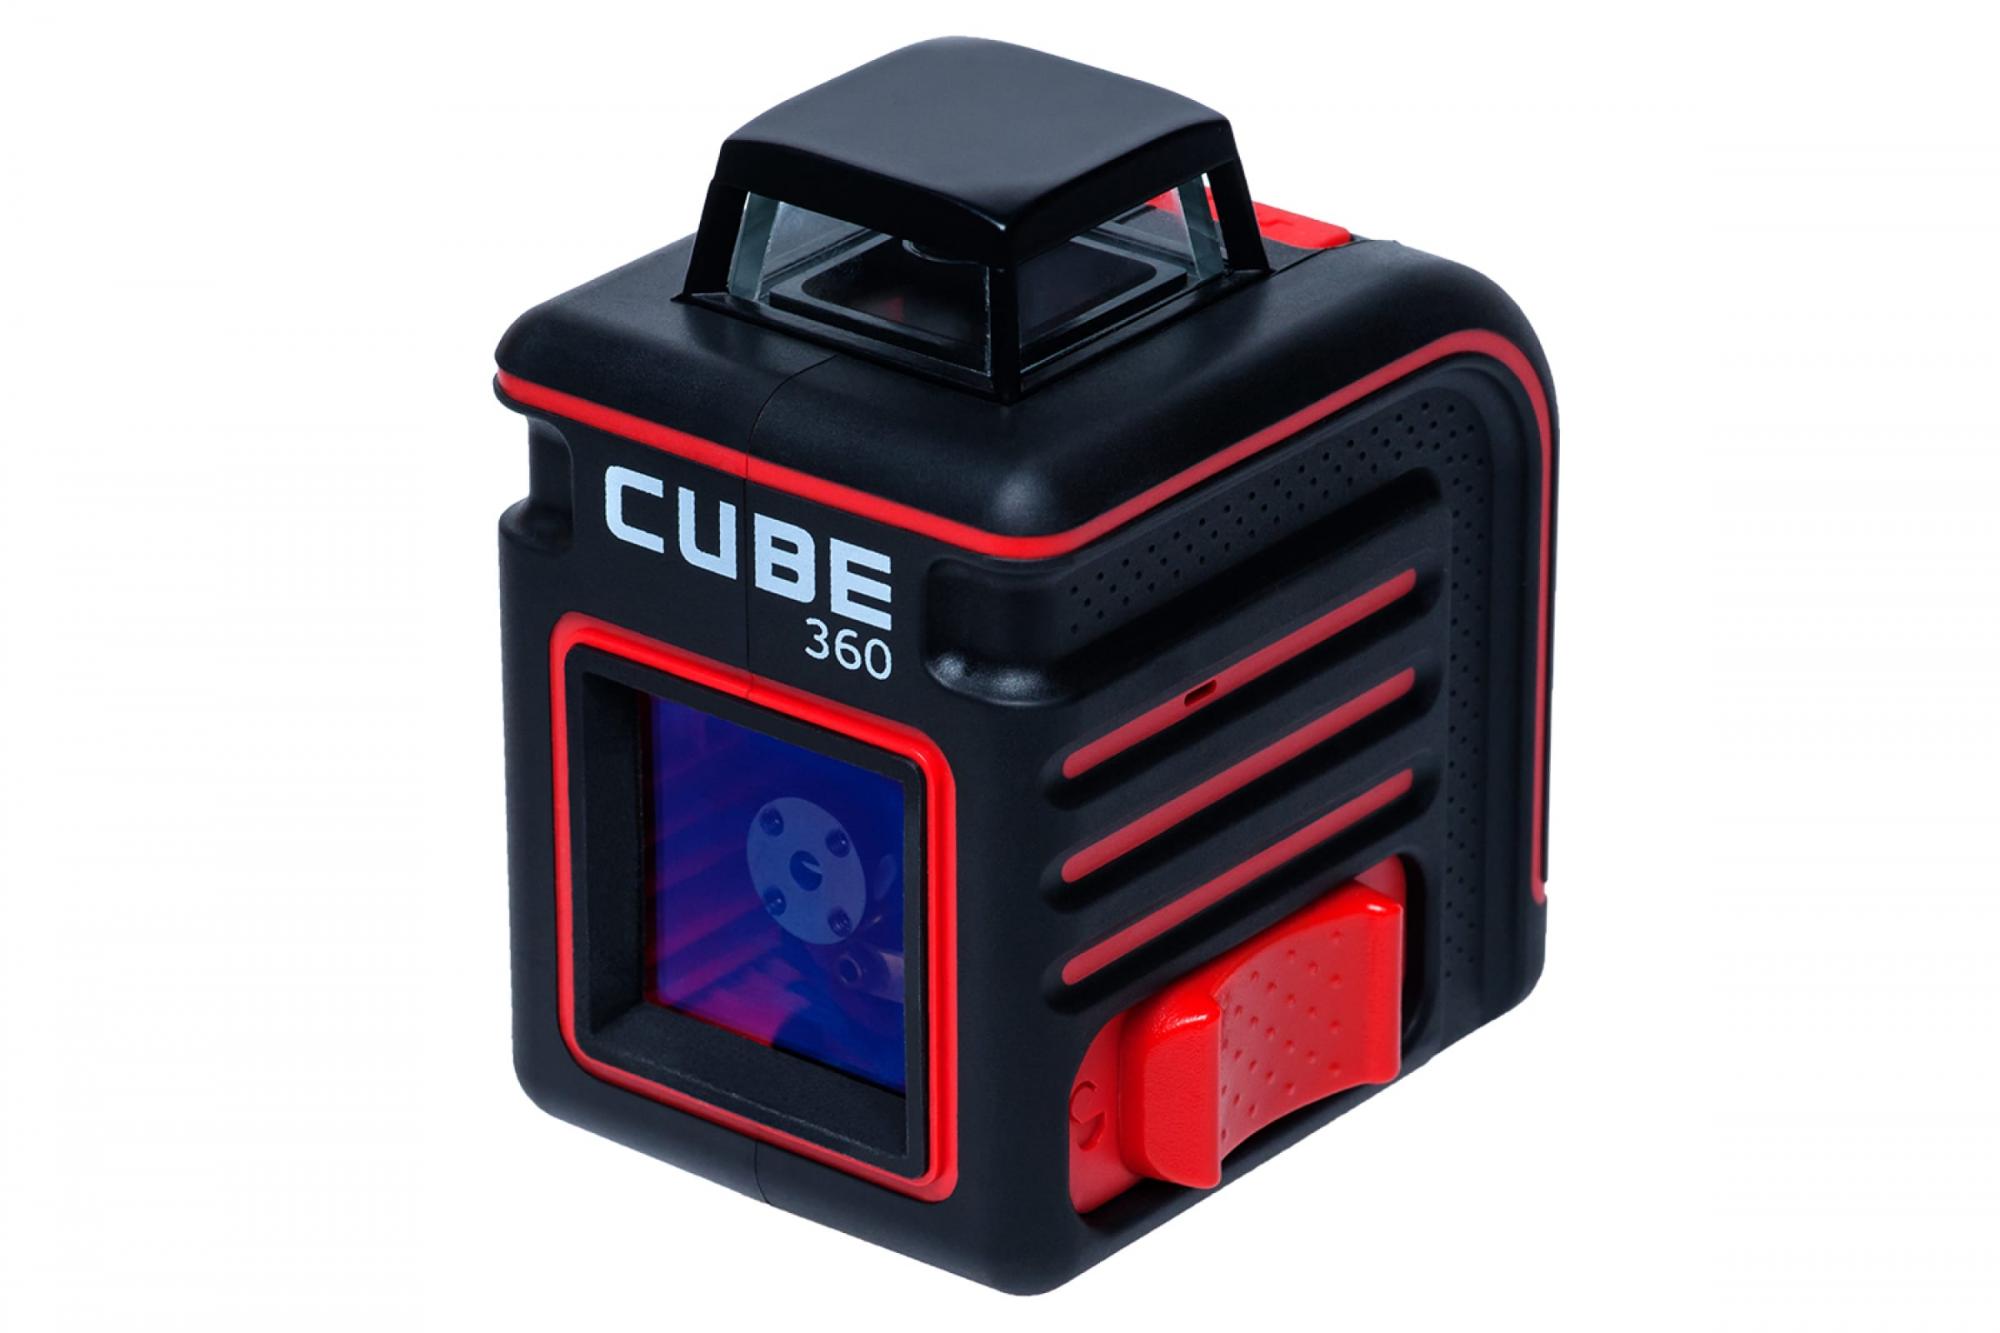 Лазерный уровень cube 360 professional edition. Нивелир лазерный ada Cube 360 professional Edition. Лазерный уровень ada Cube 360 Basic Edition. Построитель лазерных плоскостей ada Cube 360 professional Edition а00445. Ada instruments Cube 360 Basic Edition (а00443).